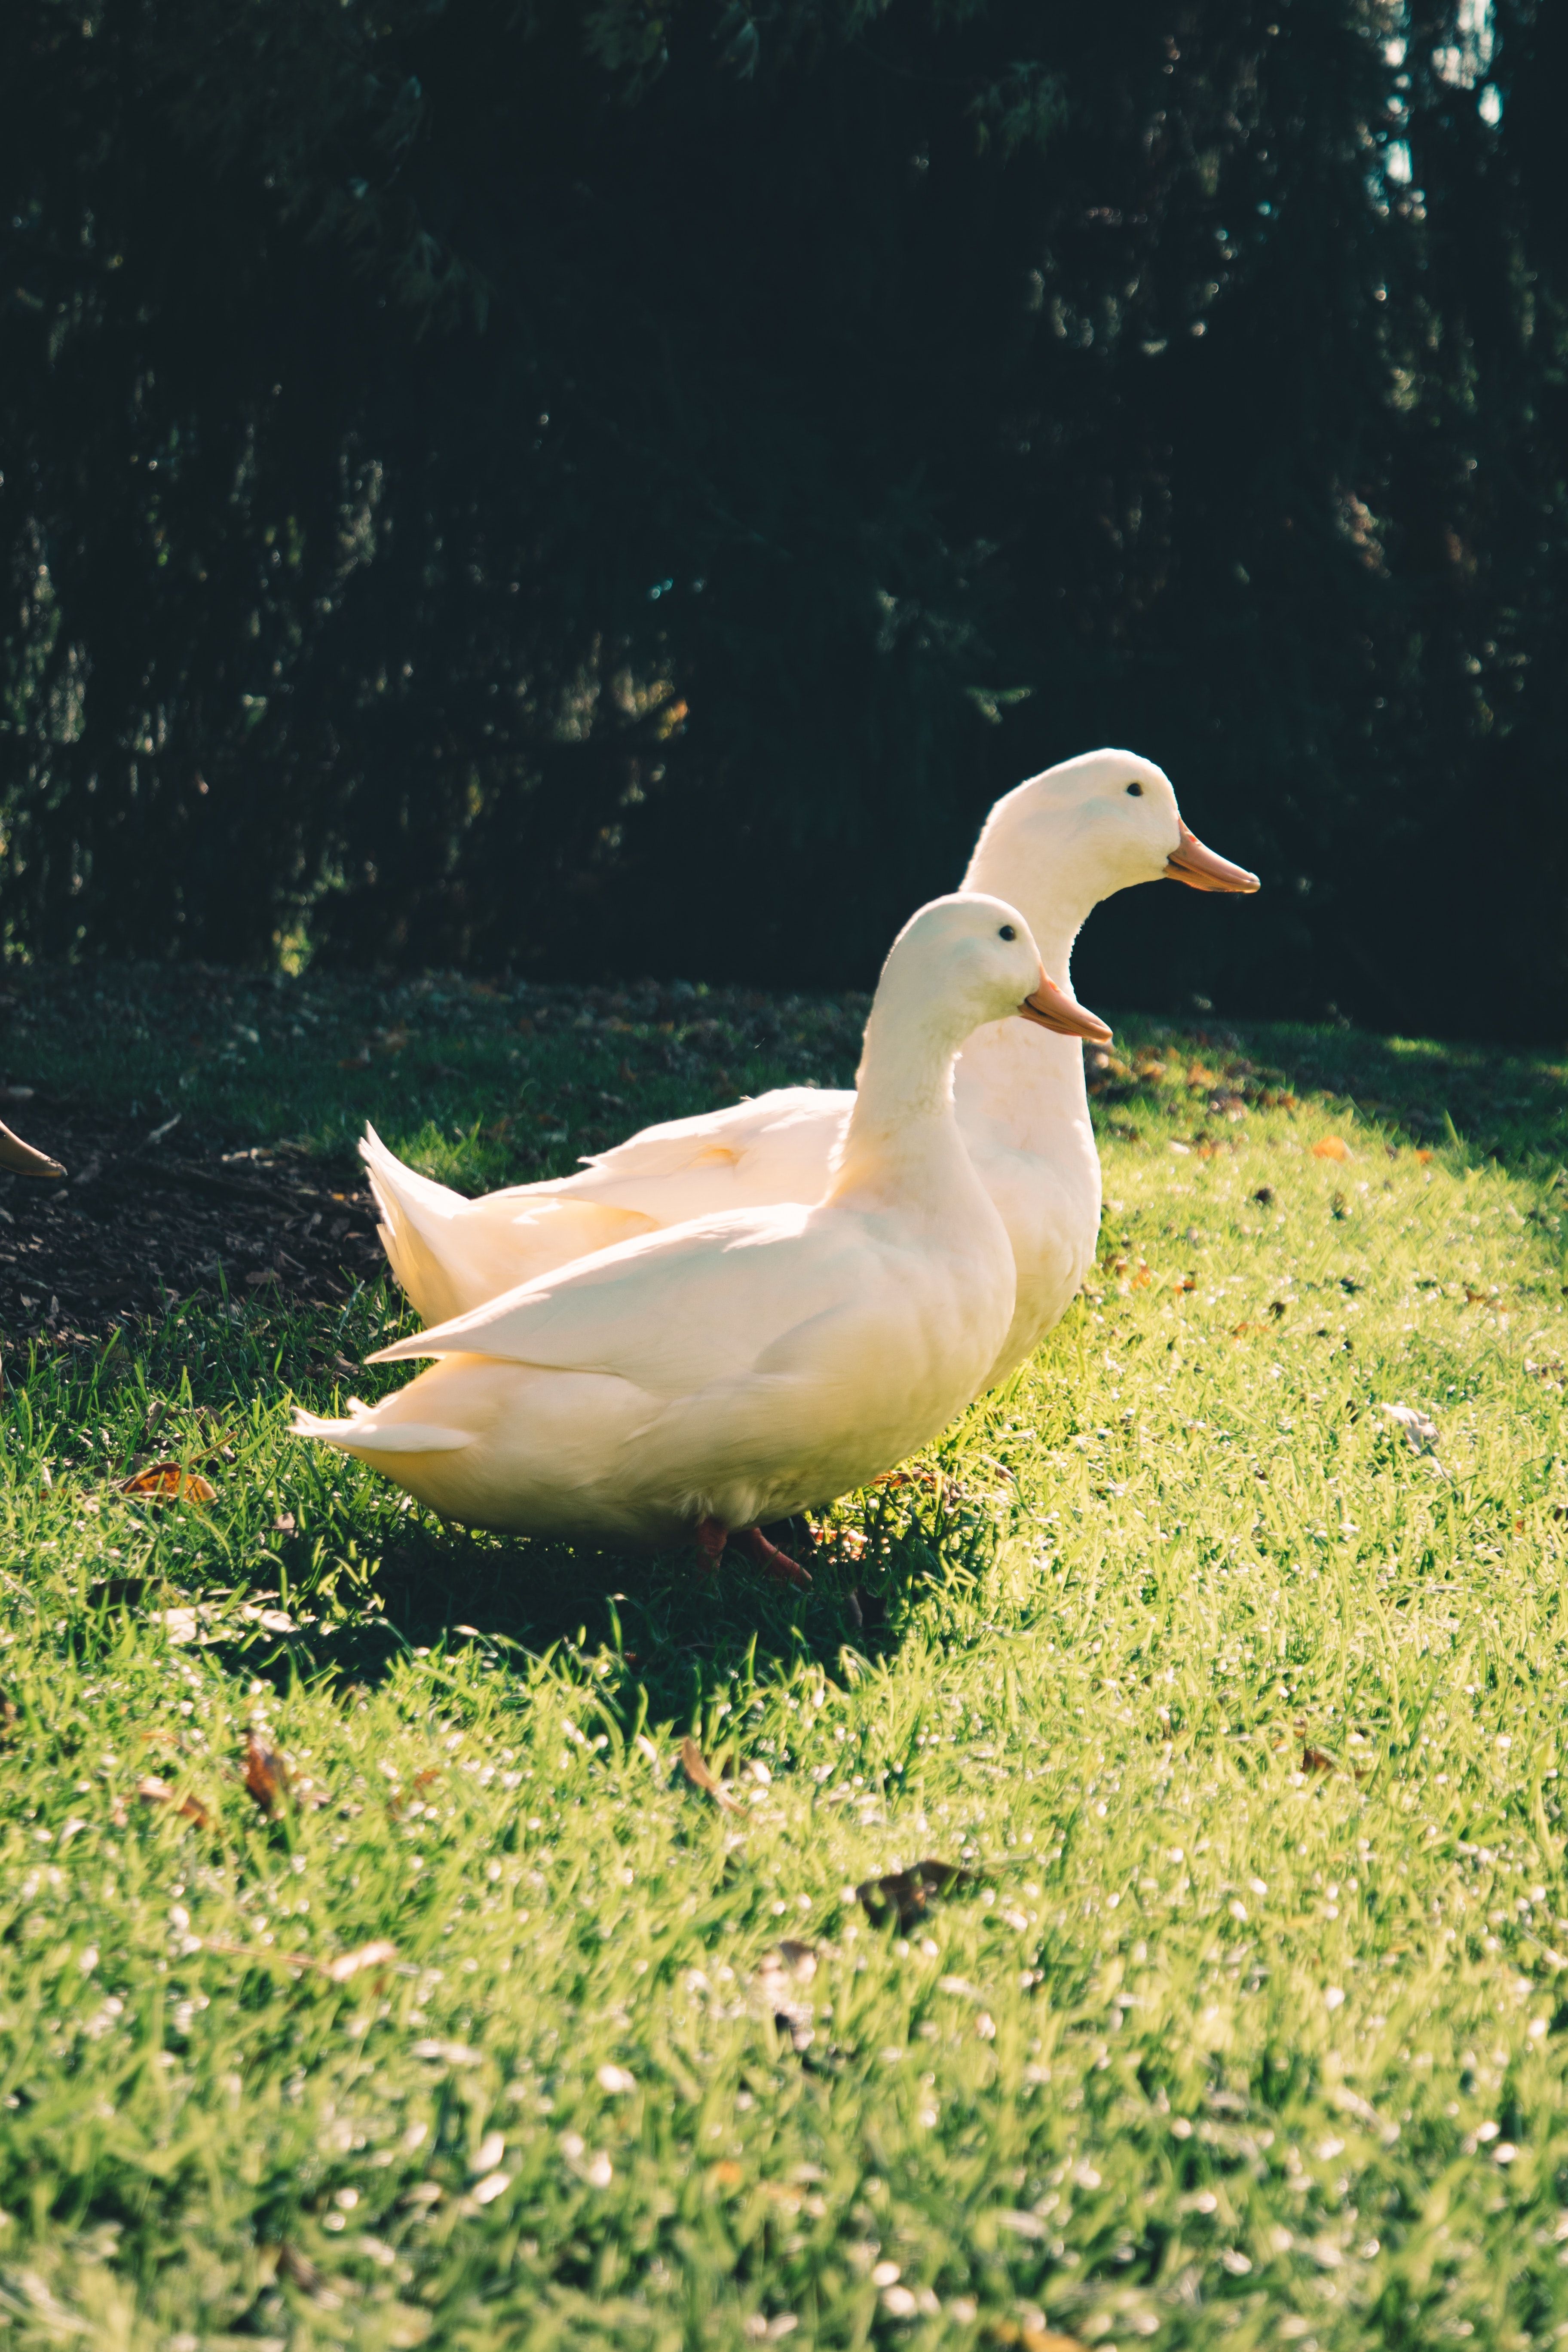 Best Duck Photo · 100% Free Downloads